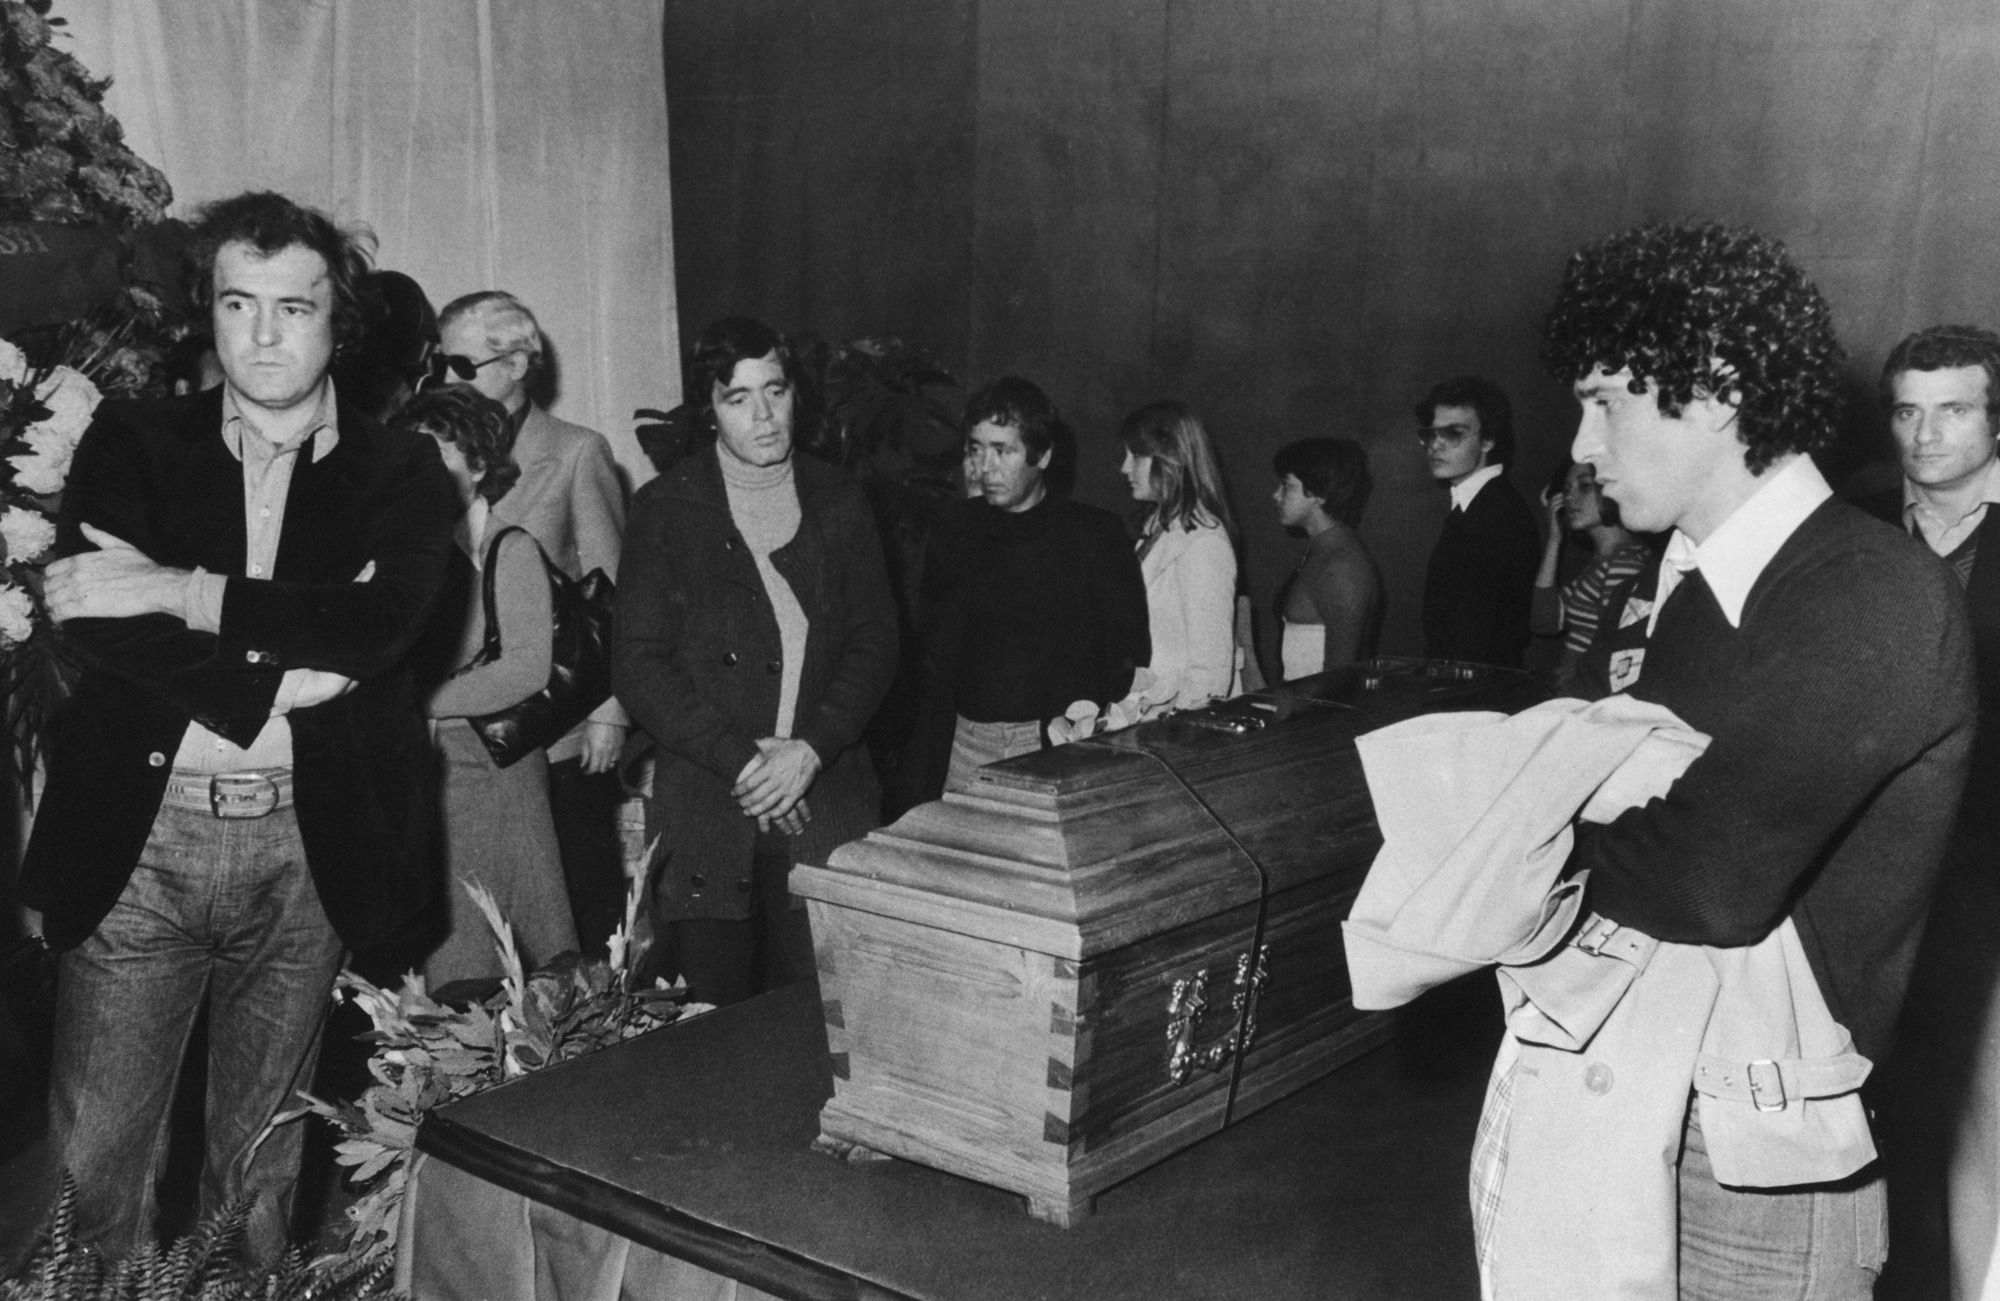 I funerali di Pier Paolo Pasolini a Roma, il 5 novembre 1975. È stato assassinato a Ostia il 2 novembre, in circostanze che rimangono in gran parte inspiegabili. Presenti al funerale sono il regista Bernardo Bertolucci (a sinistra), l'attore Franco Citti, lo scrittore Sergio Citti e l'attore Ninetto Davoli (a destra). (Foto di Keystone / Hulton Archive)